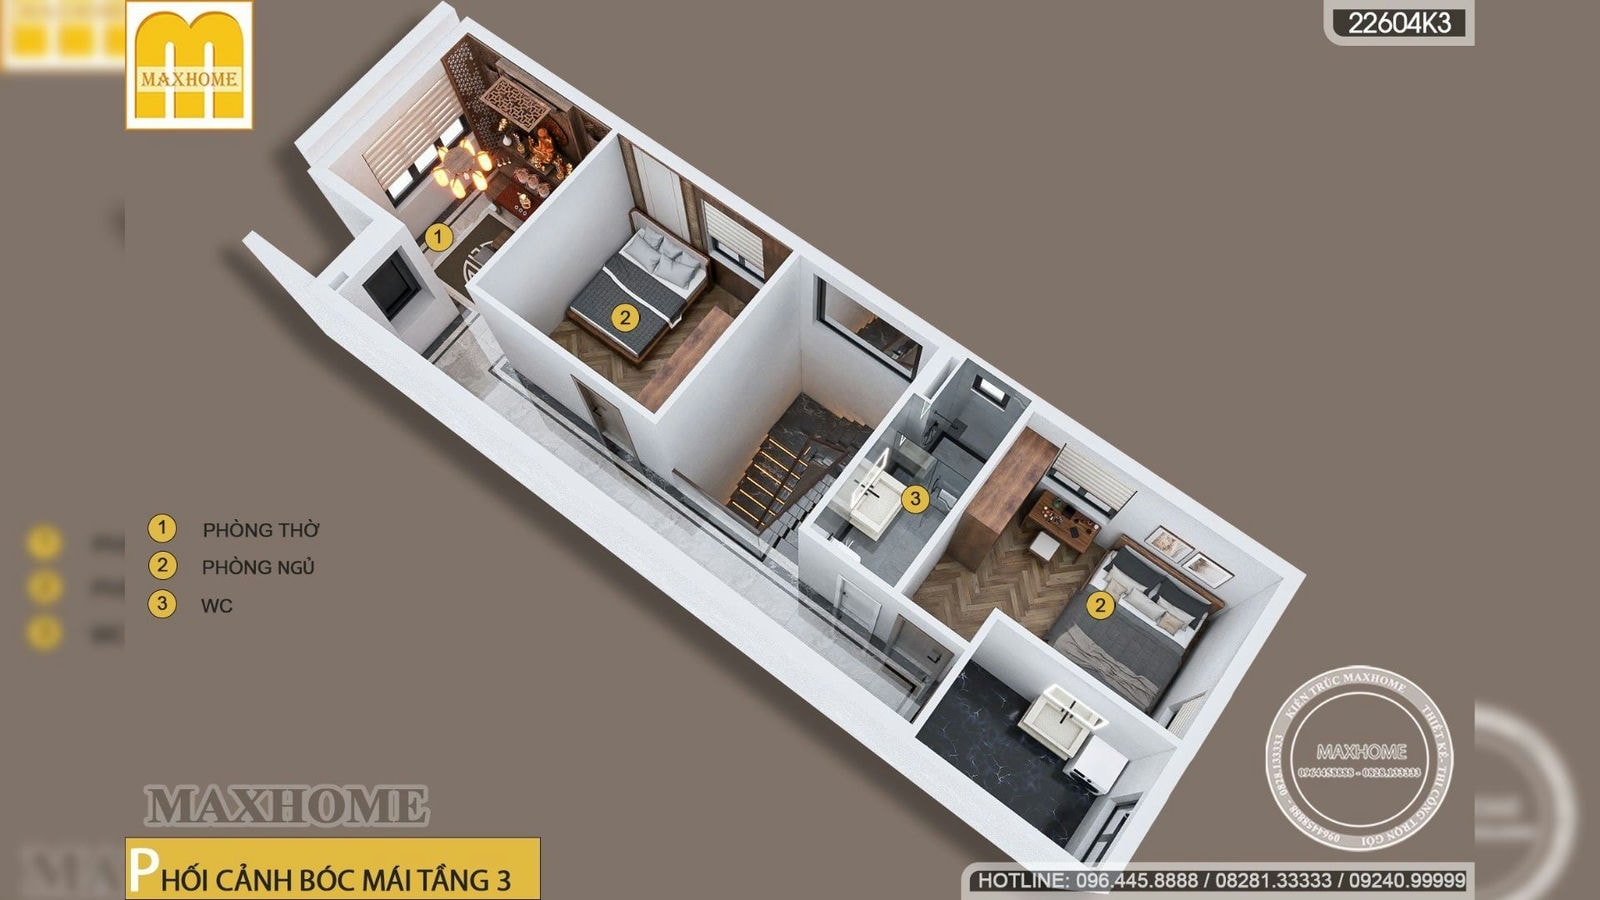 Maxhome thiết kế nhà lô phố 5x15m 4 phòng ngủ thoáng mát | MH02287